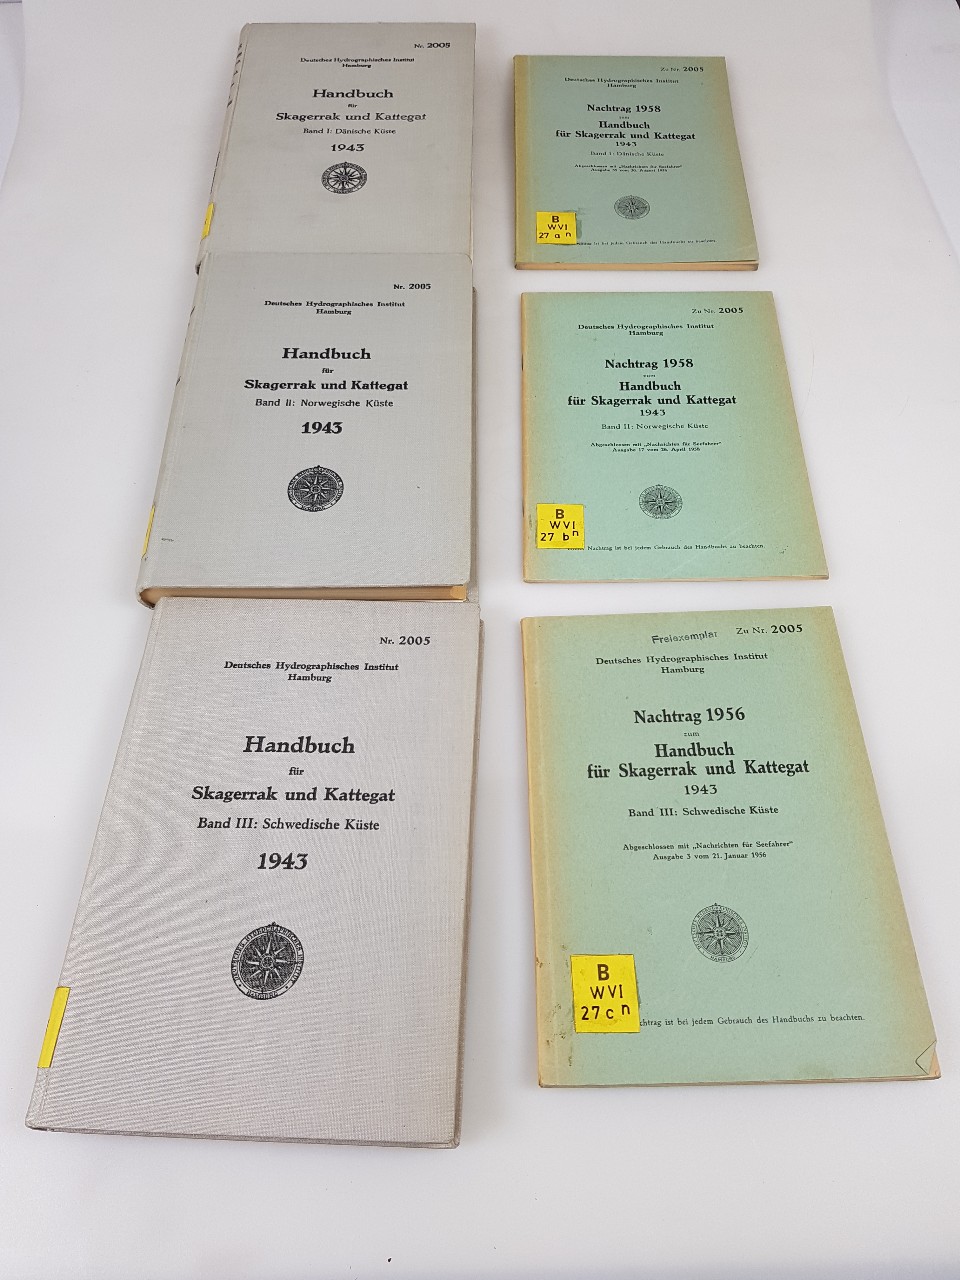 Deutsches Hydrographisches Institut (Hg.):  Handbuch für Skagerrak und Kattegat, Band I-III (I: Dänische Küste, II: Norwegische Küste, III: Schwedische Küste) + jeweilige Nachträge von 1958 (kartoniert). (= Nr. 2005). 